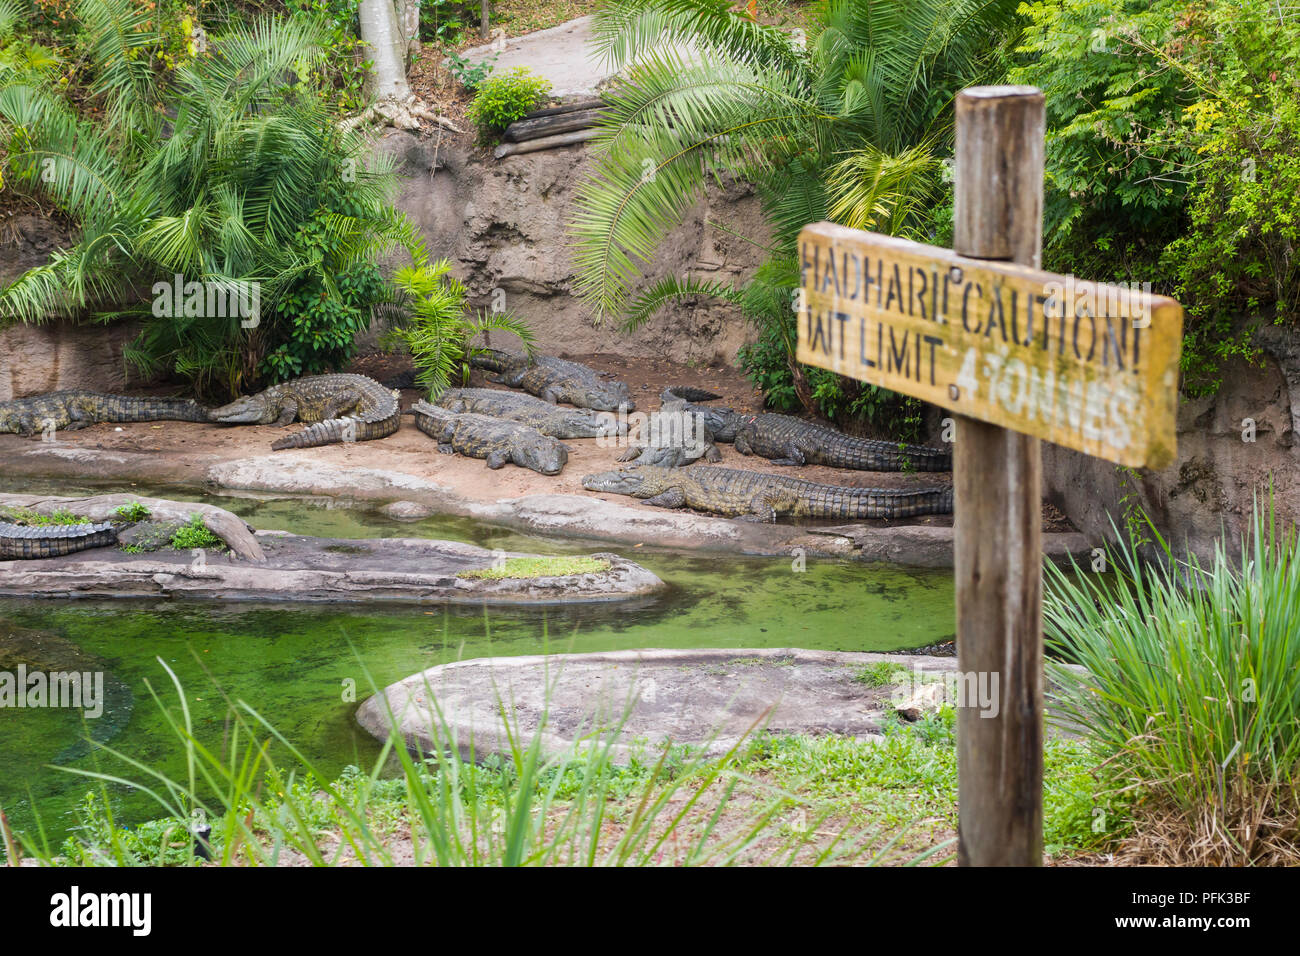 Kilimanjaro Safari ride in Disneys il Parco a Tema del Regno degli Animali di Walt Disney World, a Orlando, Florida. Foto Stock